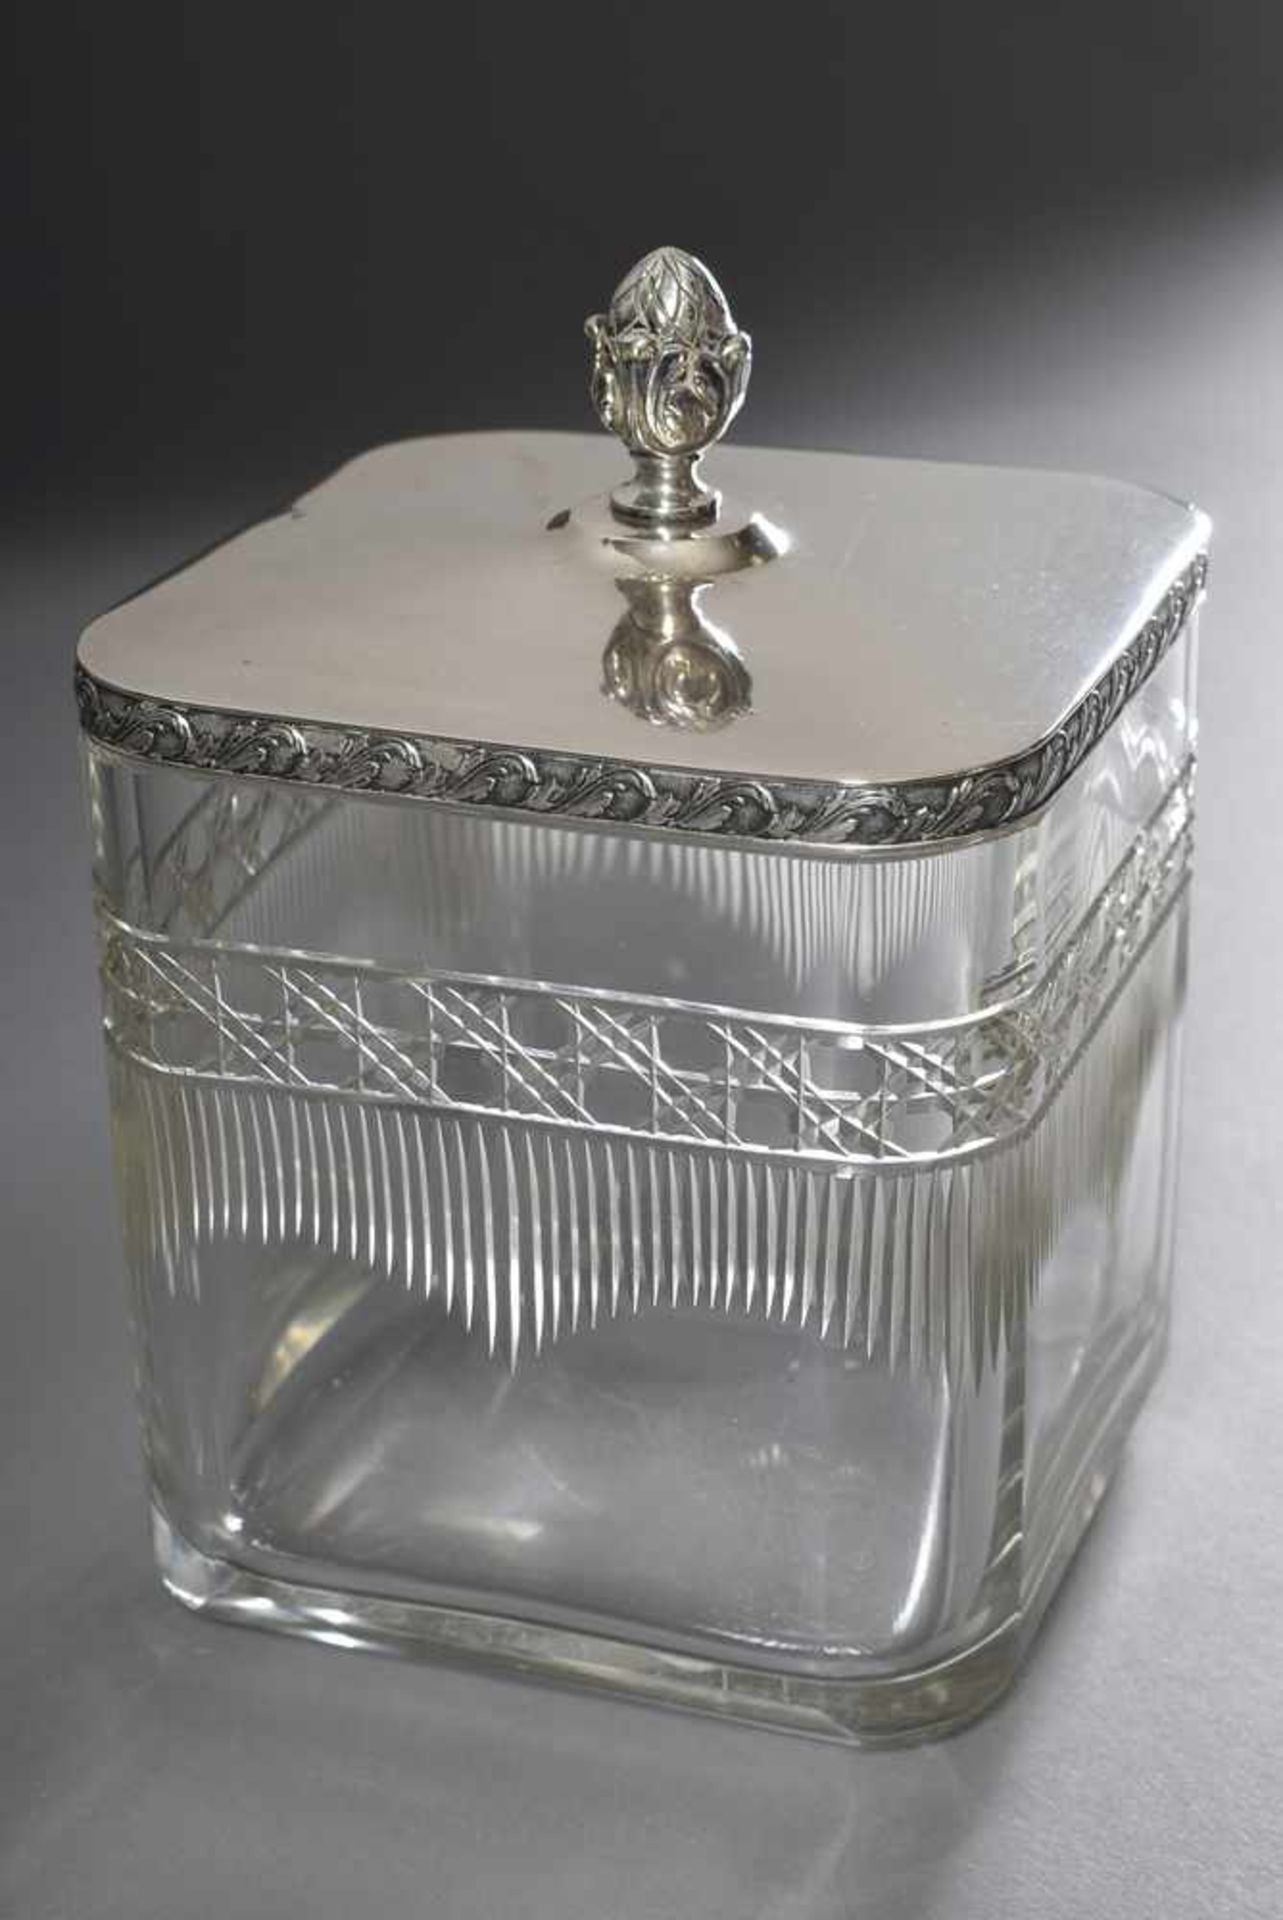 Eckige Kristall Keksdose mit Baccaratschliff und Silber 800 Deckel, Österreich um 1900, - Image 3 of 3